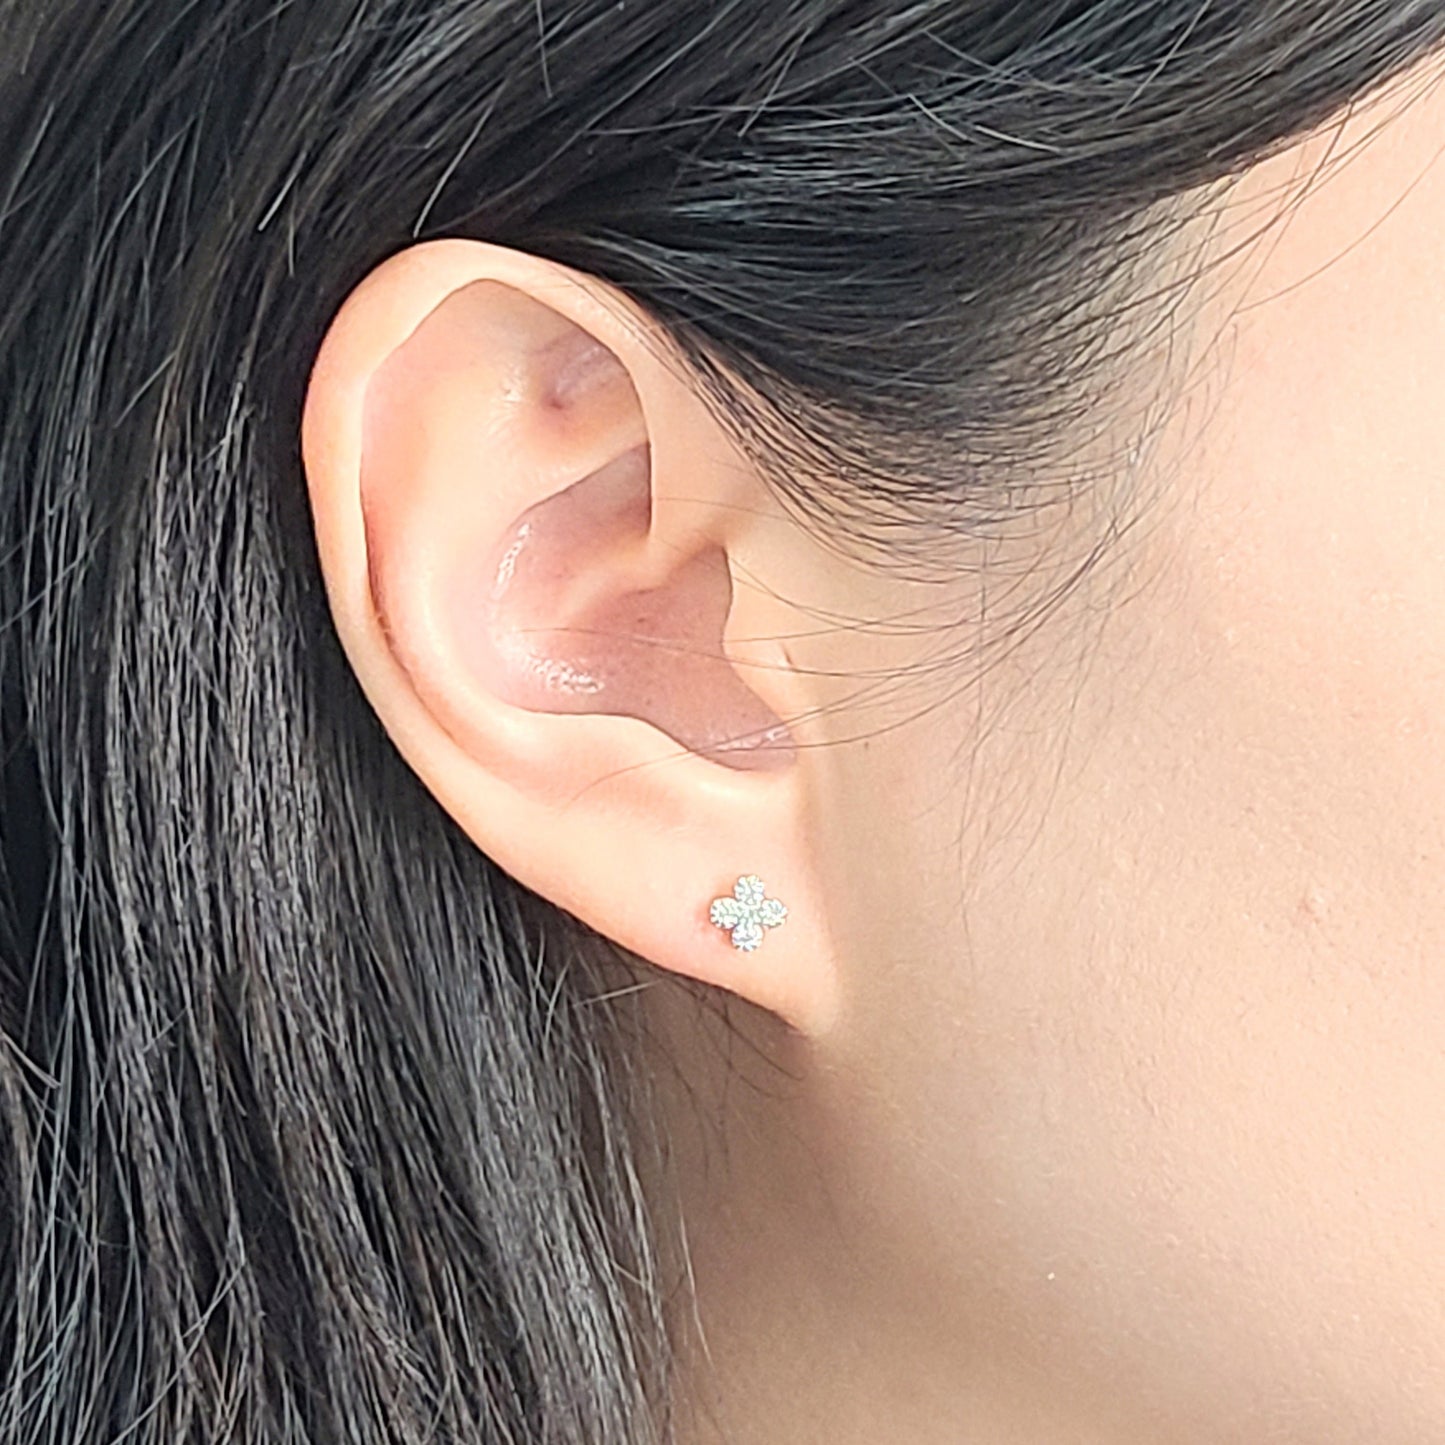 Natural Diamond, Sapphire, Ruby / 14K Gold Flower Stud Earrings / Anniversary gift  Gift for her / Flower Stud Earrings